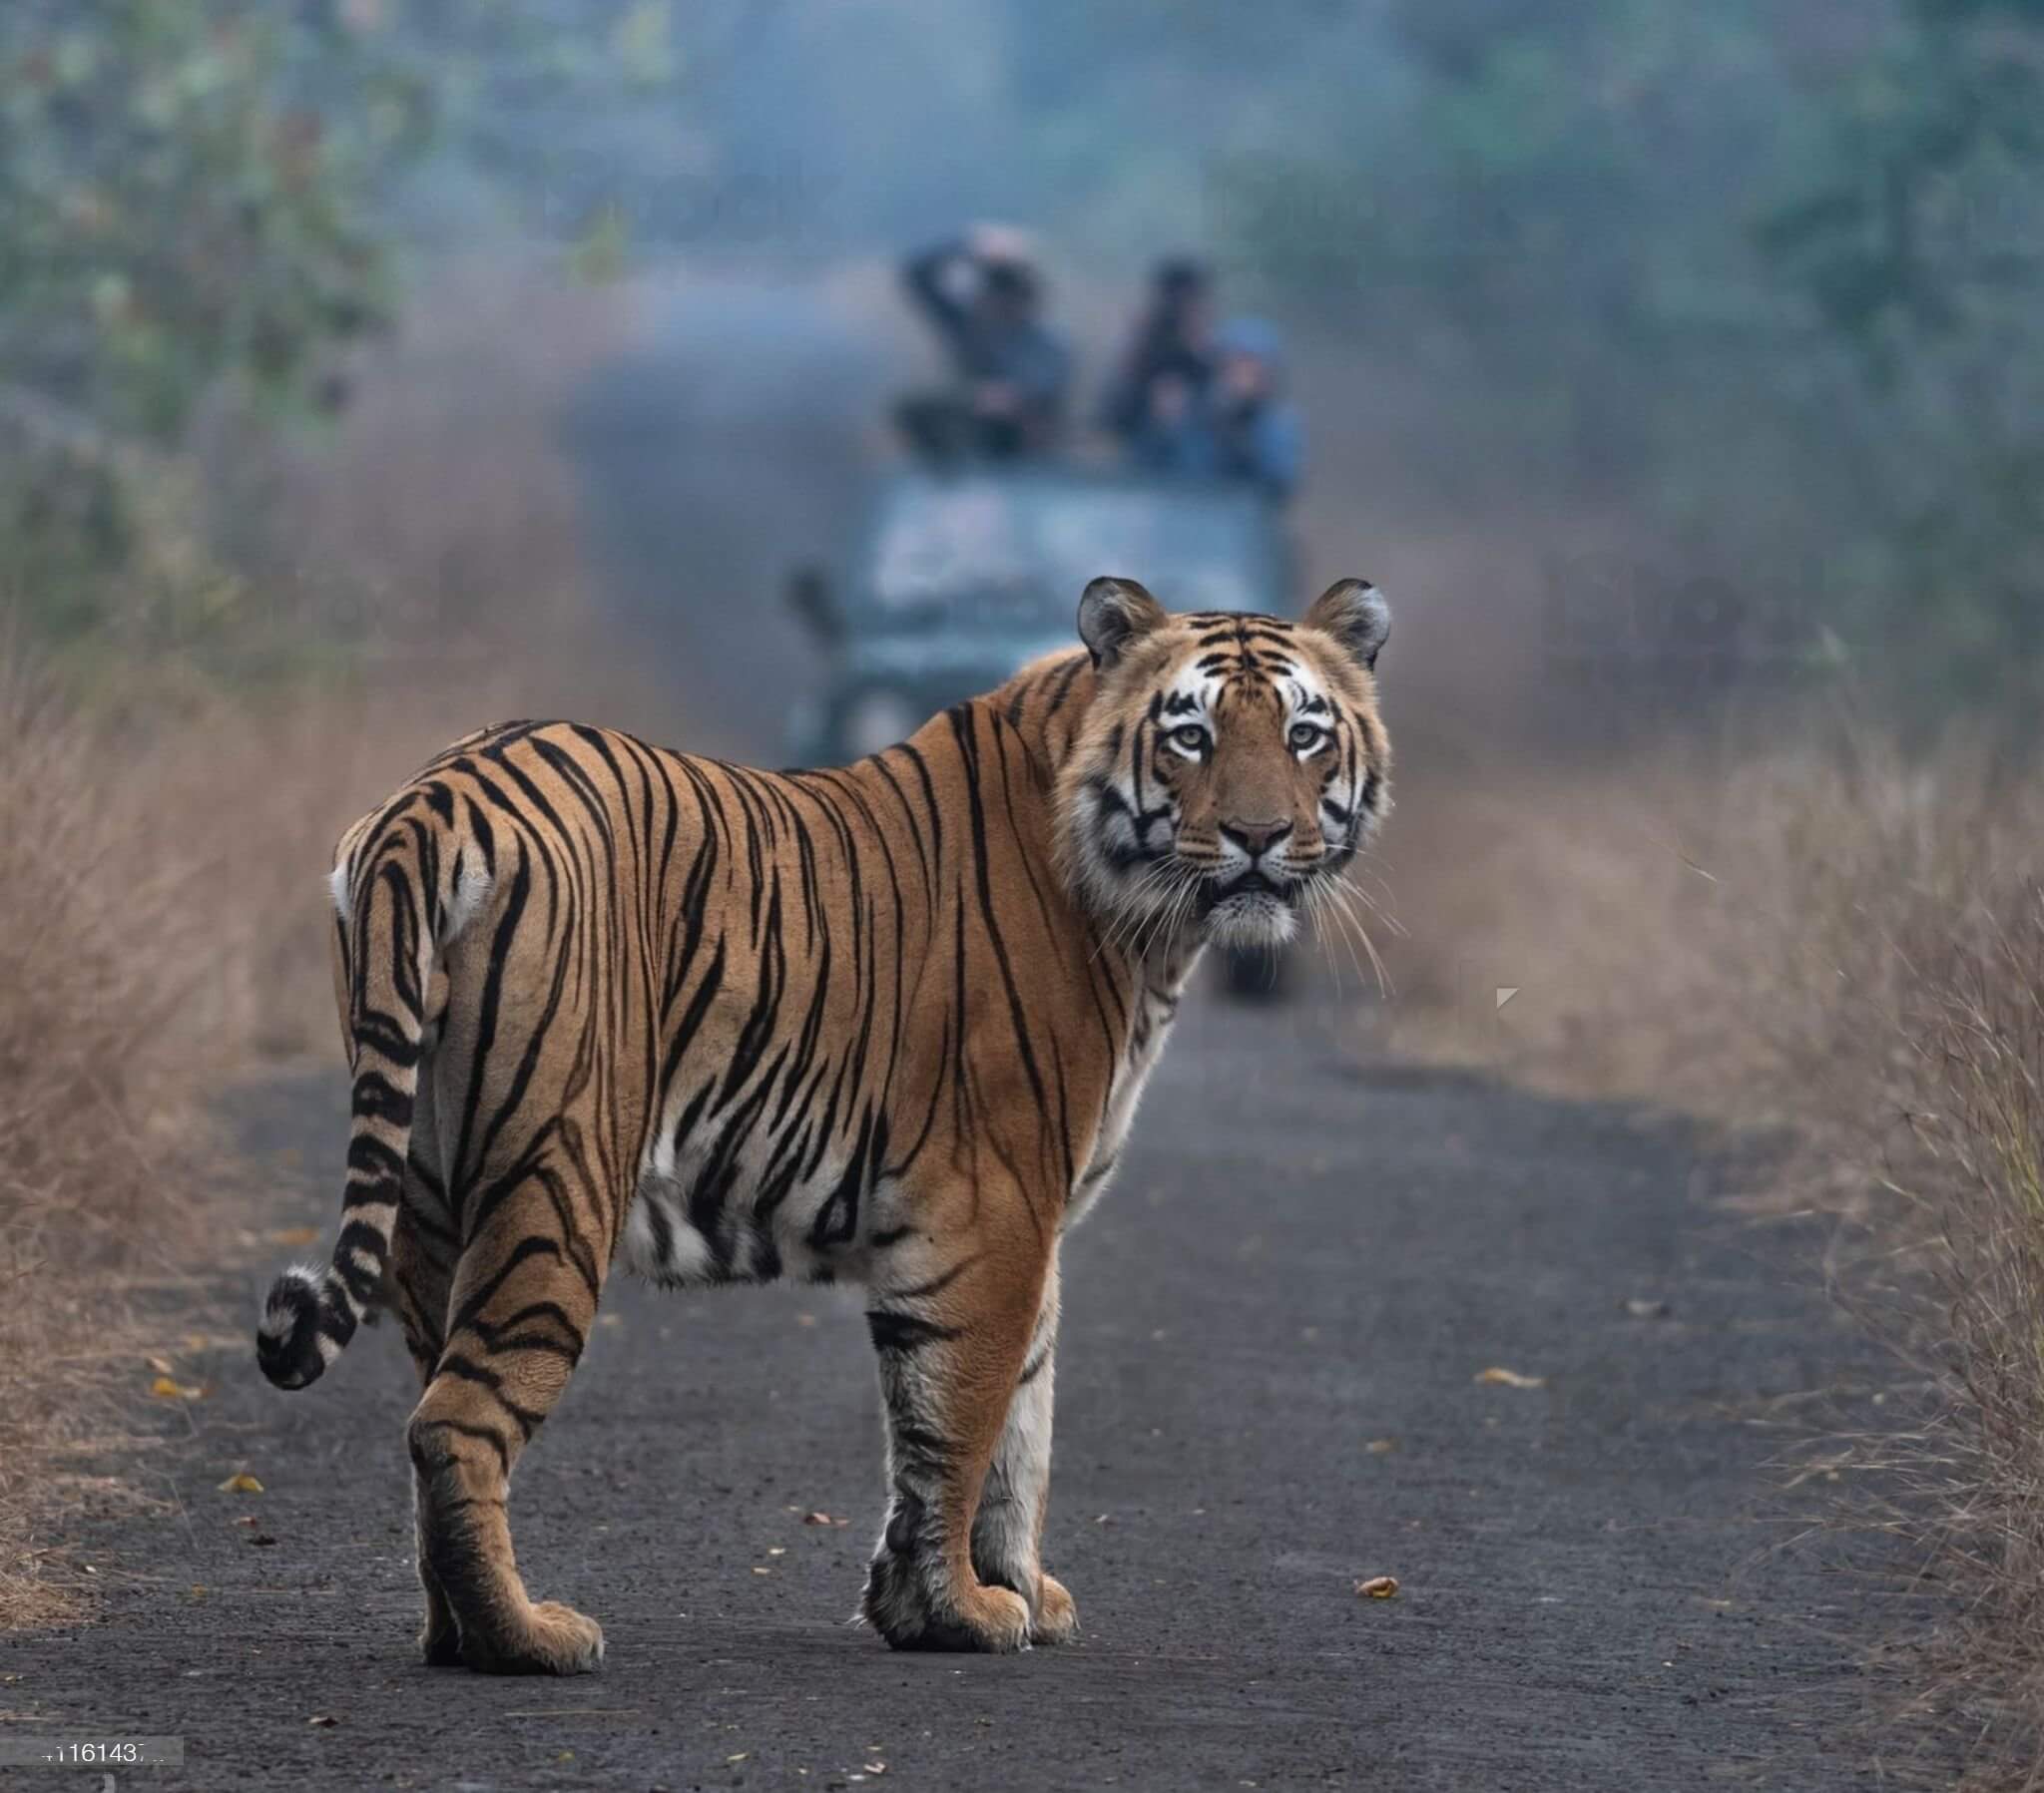 Welcome to Chuka Tiger Reserve Pilibhit, Uttar Pradesh